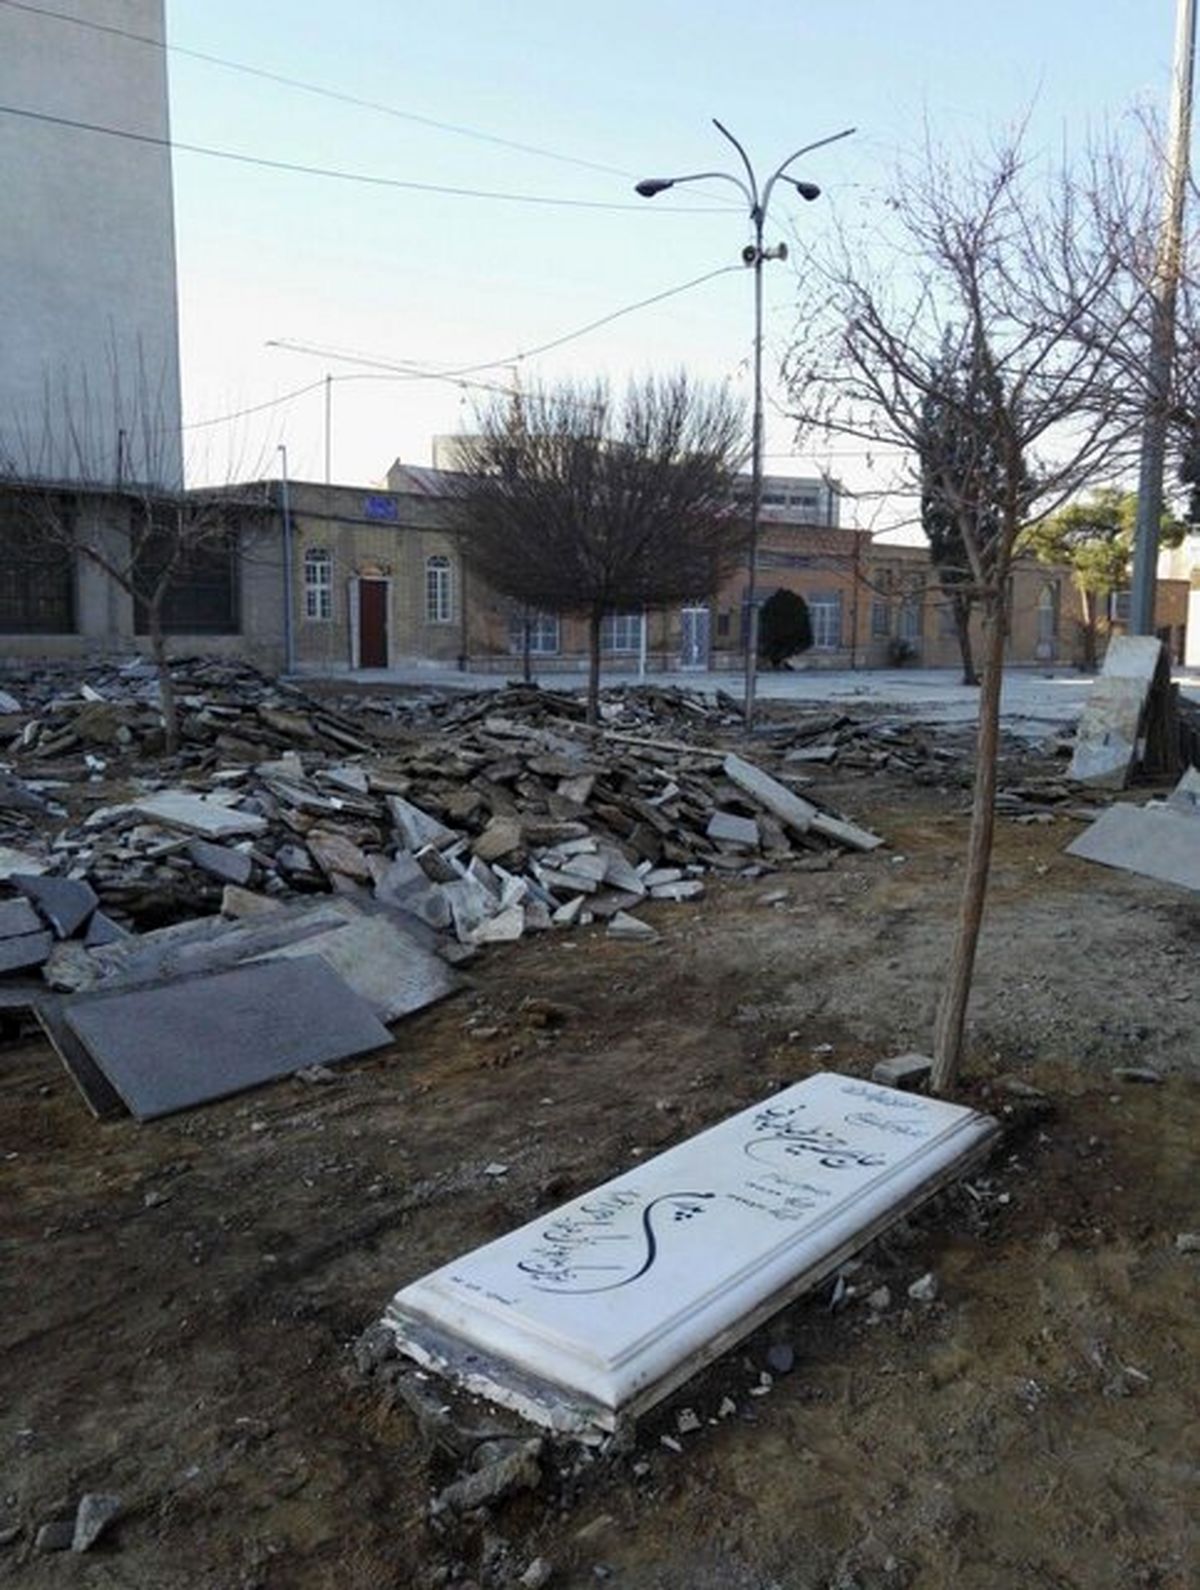 نامه شهرداری به اوقاف برای توقف تخریب قبور قدیمی امامزاده عبدالله